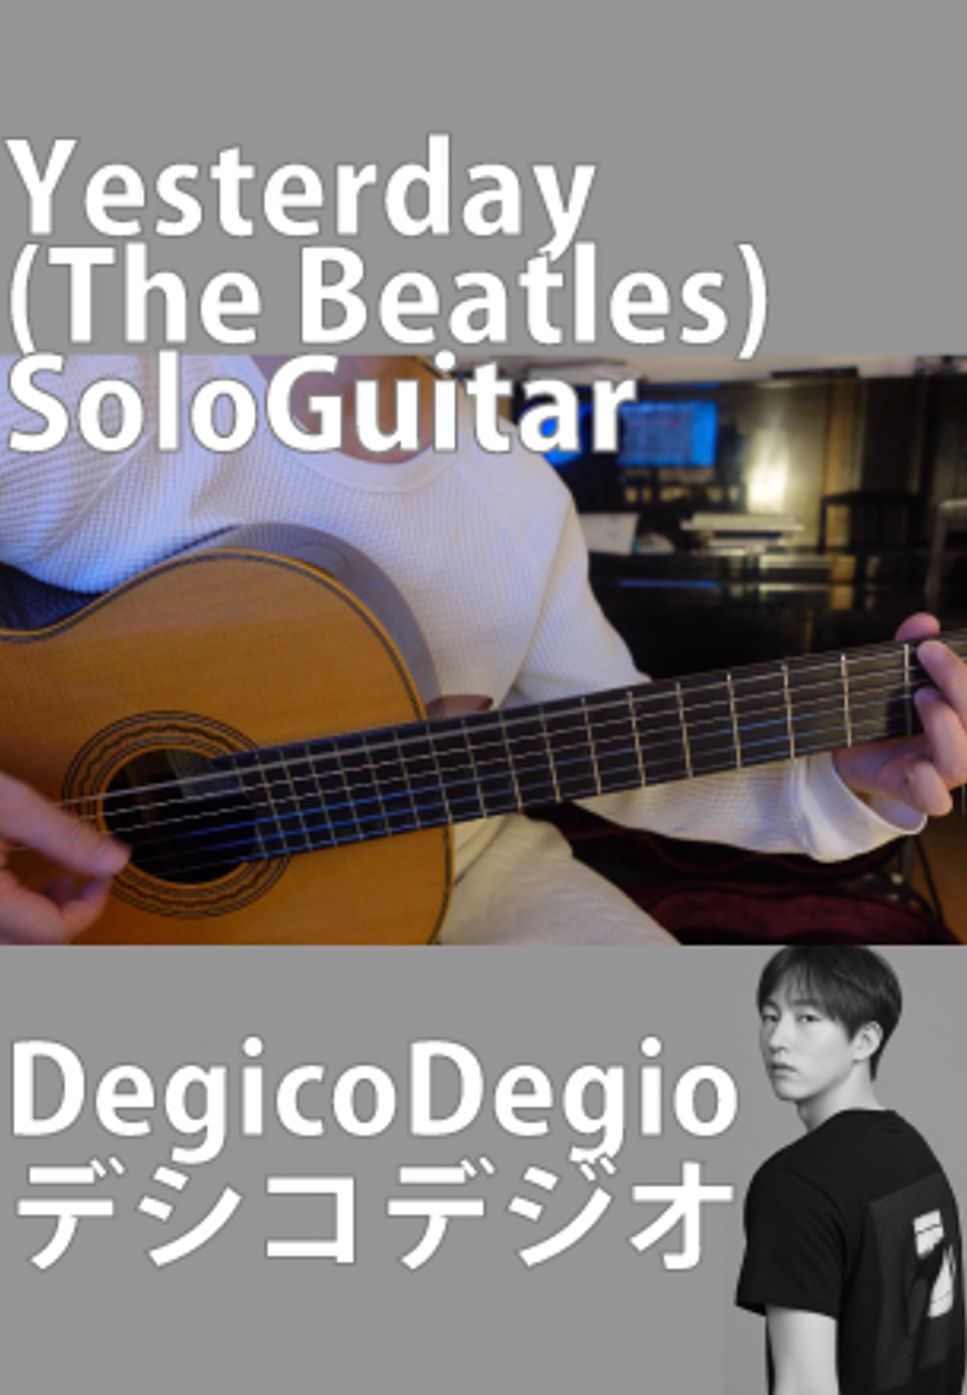 The Beatles - Yesterday (ソロギター) by DegicoDegio